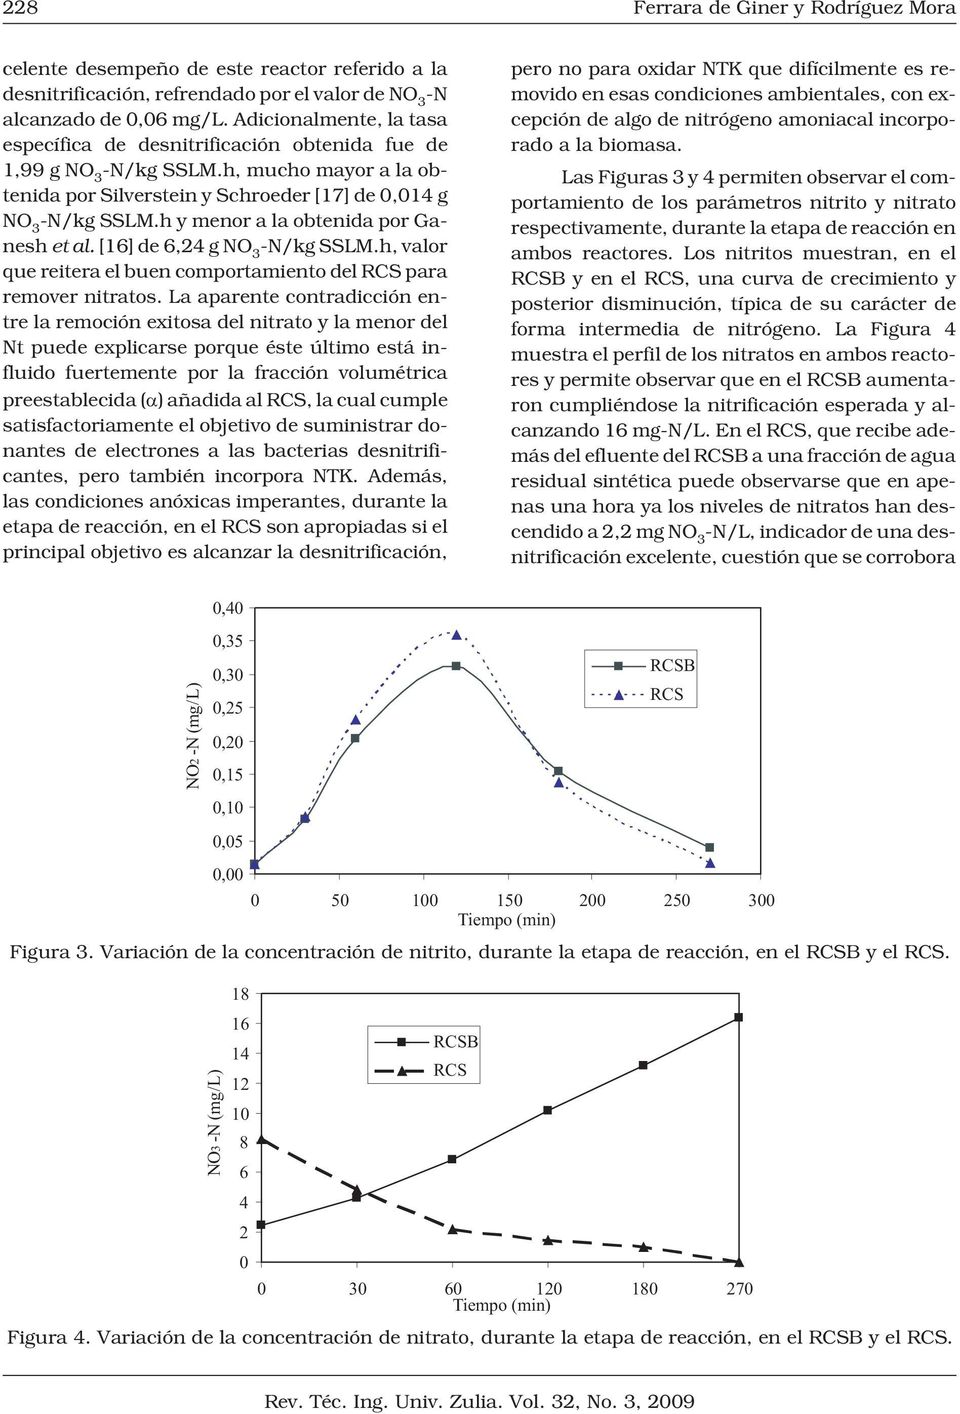 h y menor a la obtenida por Ganesh et al. [16] de 6,24 g NO 3 -N/kg SSLM.h, valor que reitera el buen comportamiento del RCS para remover nitratos.